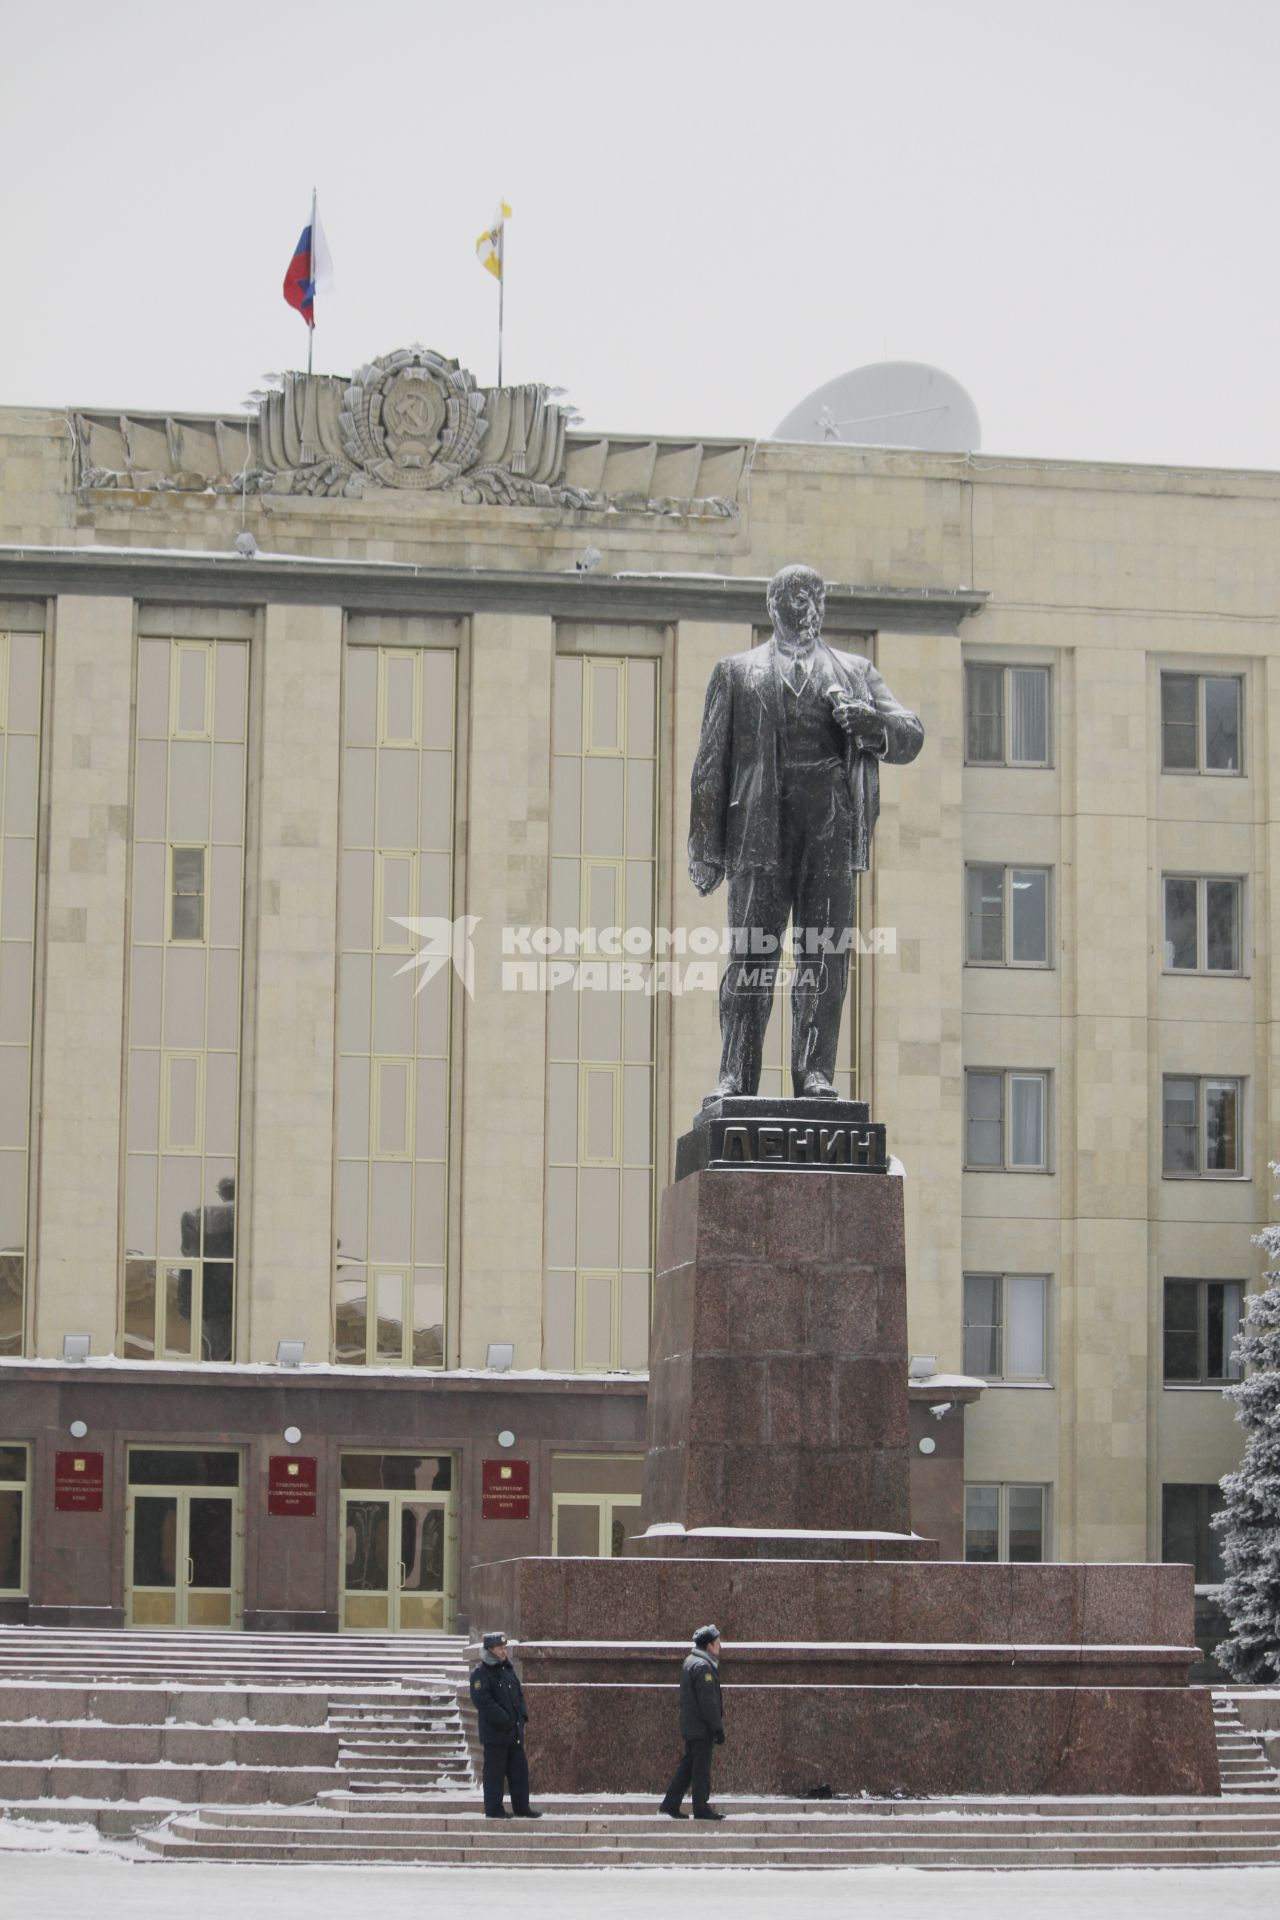 В Ставрополе прошел митинг в поддержку Владимира Путина. На снимке: замерзшая статуя памятника Ленину.